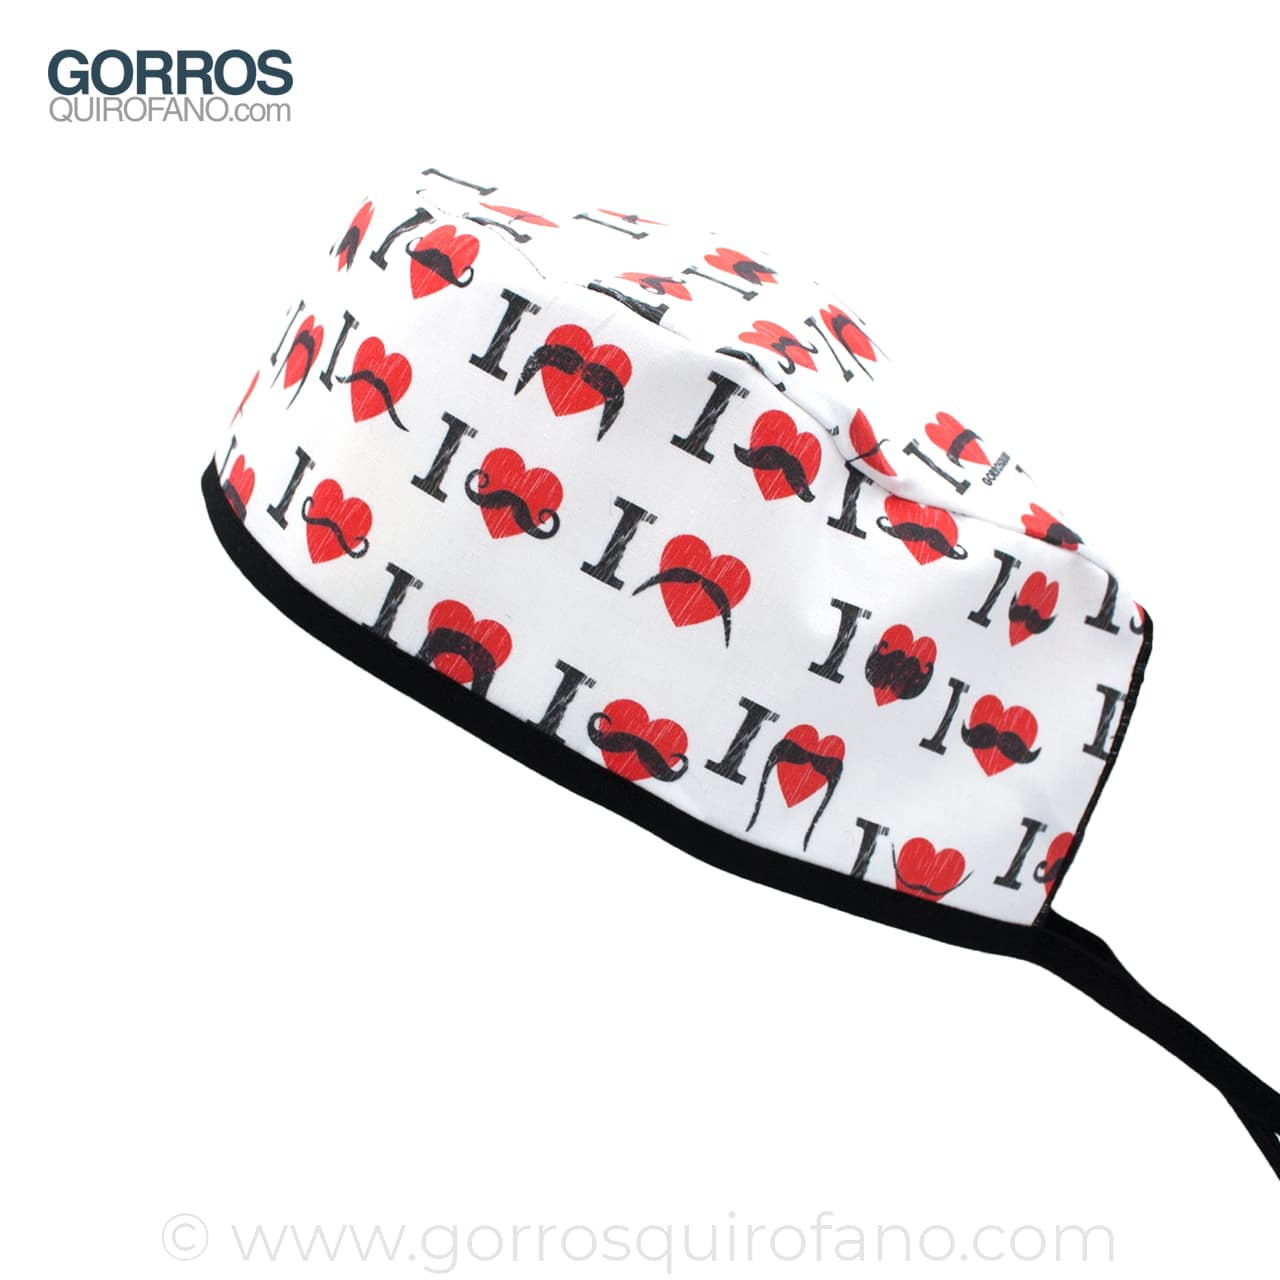 Gorros Quirofano Guantes Boxeo - 888